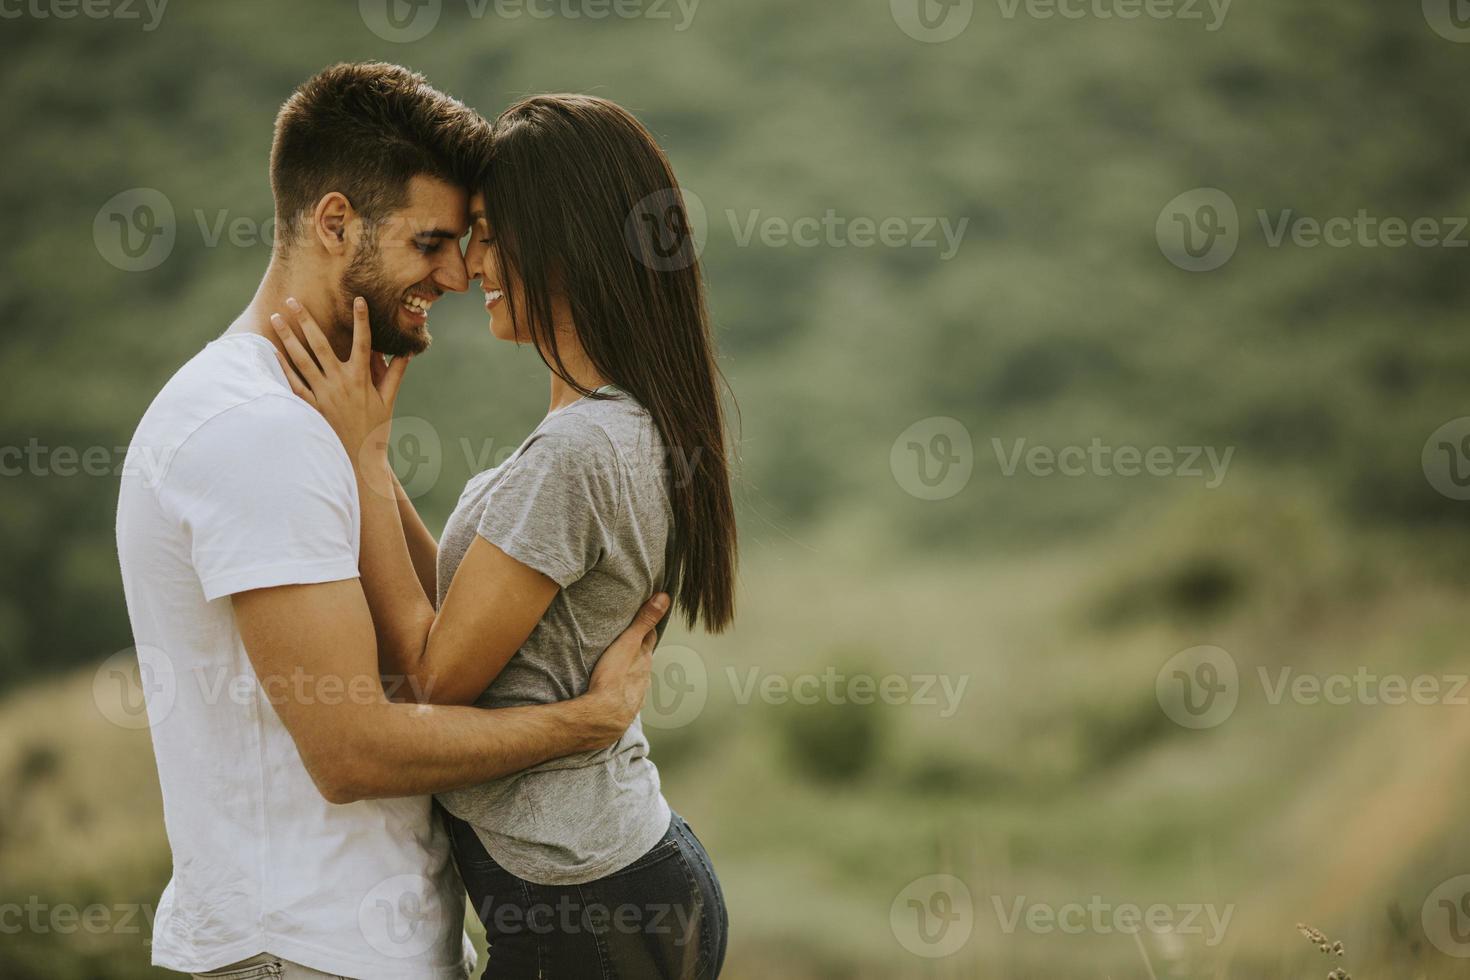 feliz, pareja joven, enamorado, en el campo de hierba foto